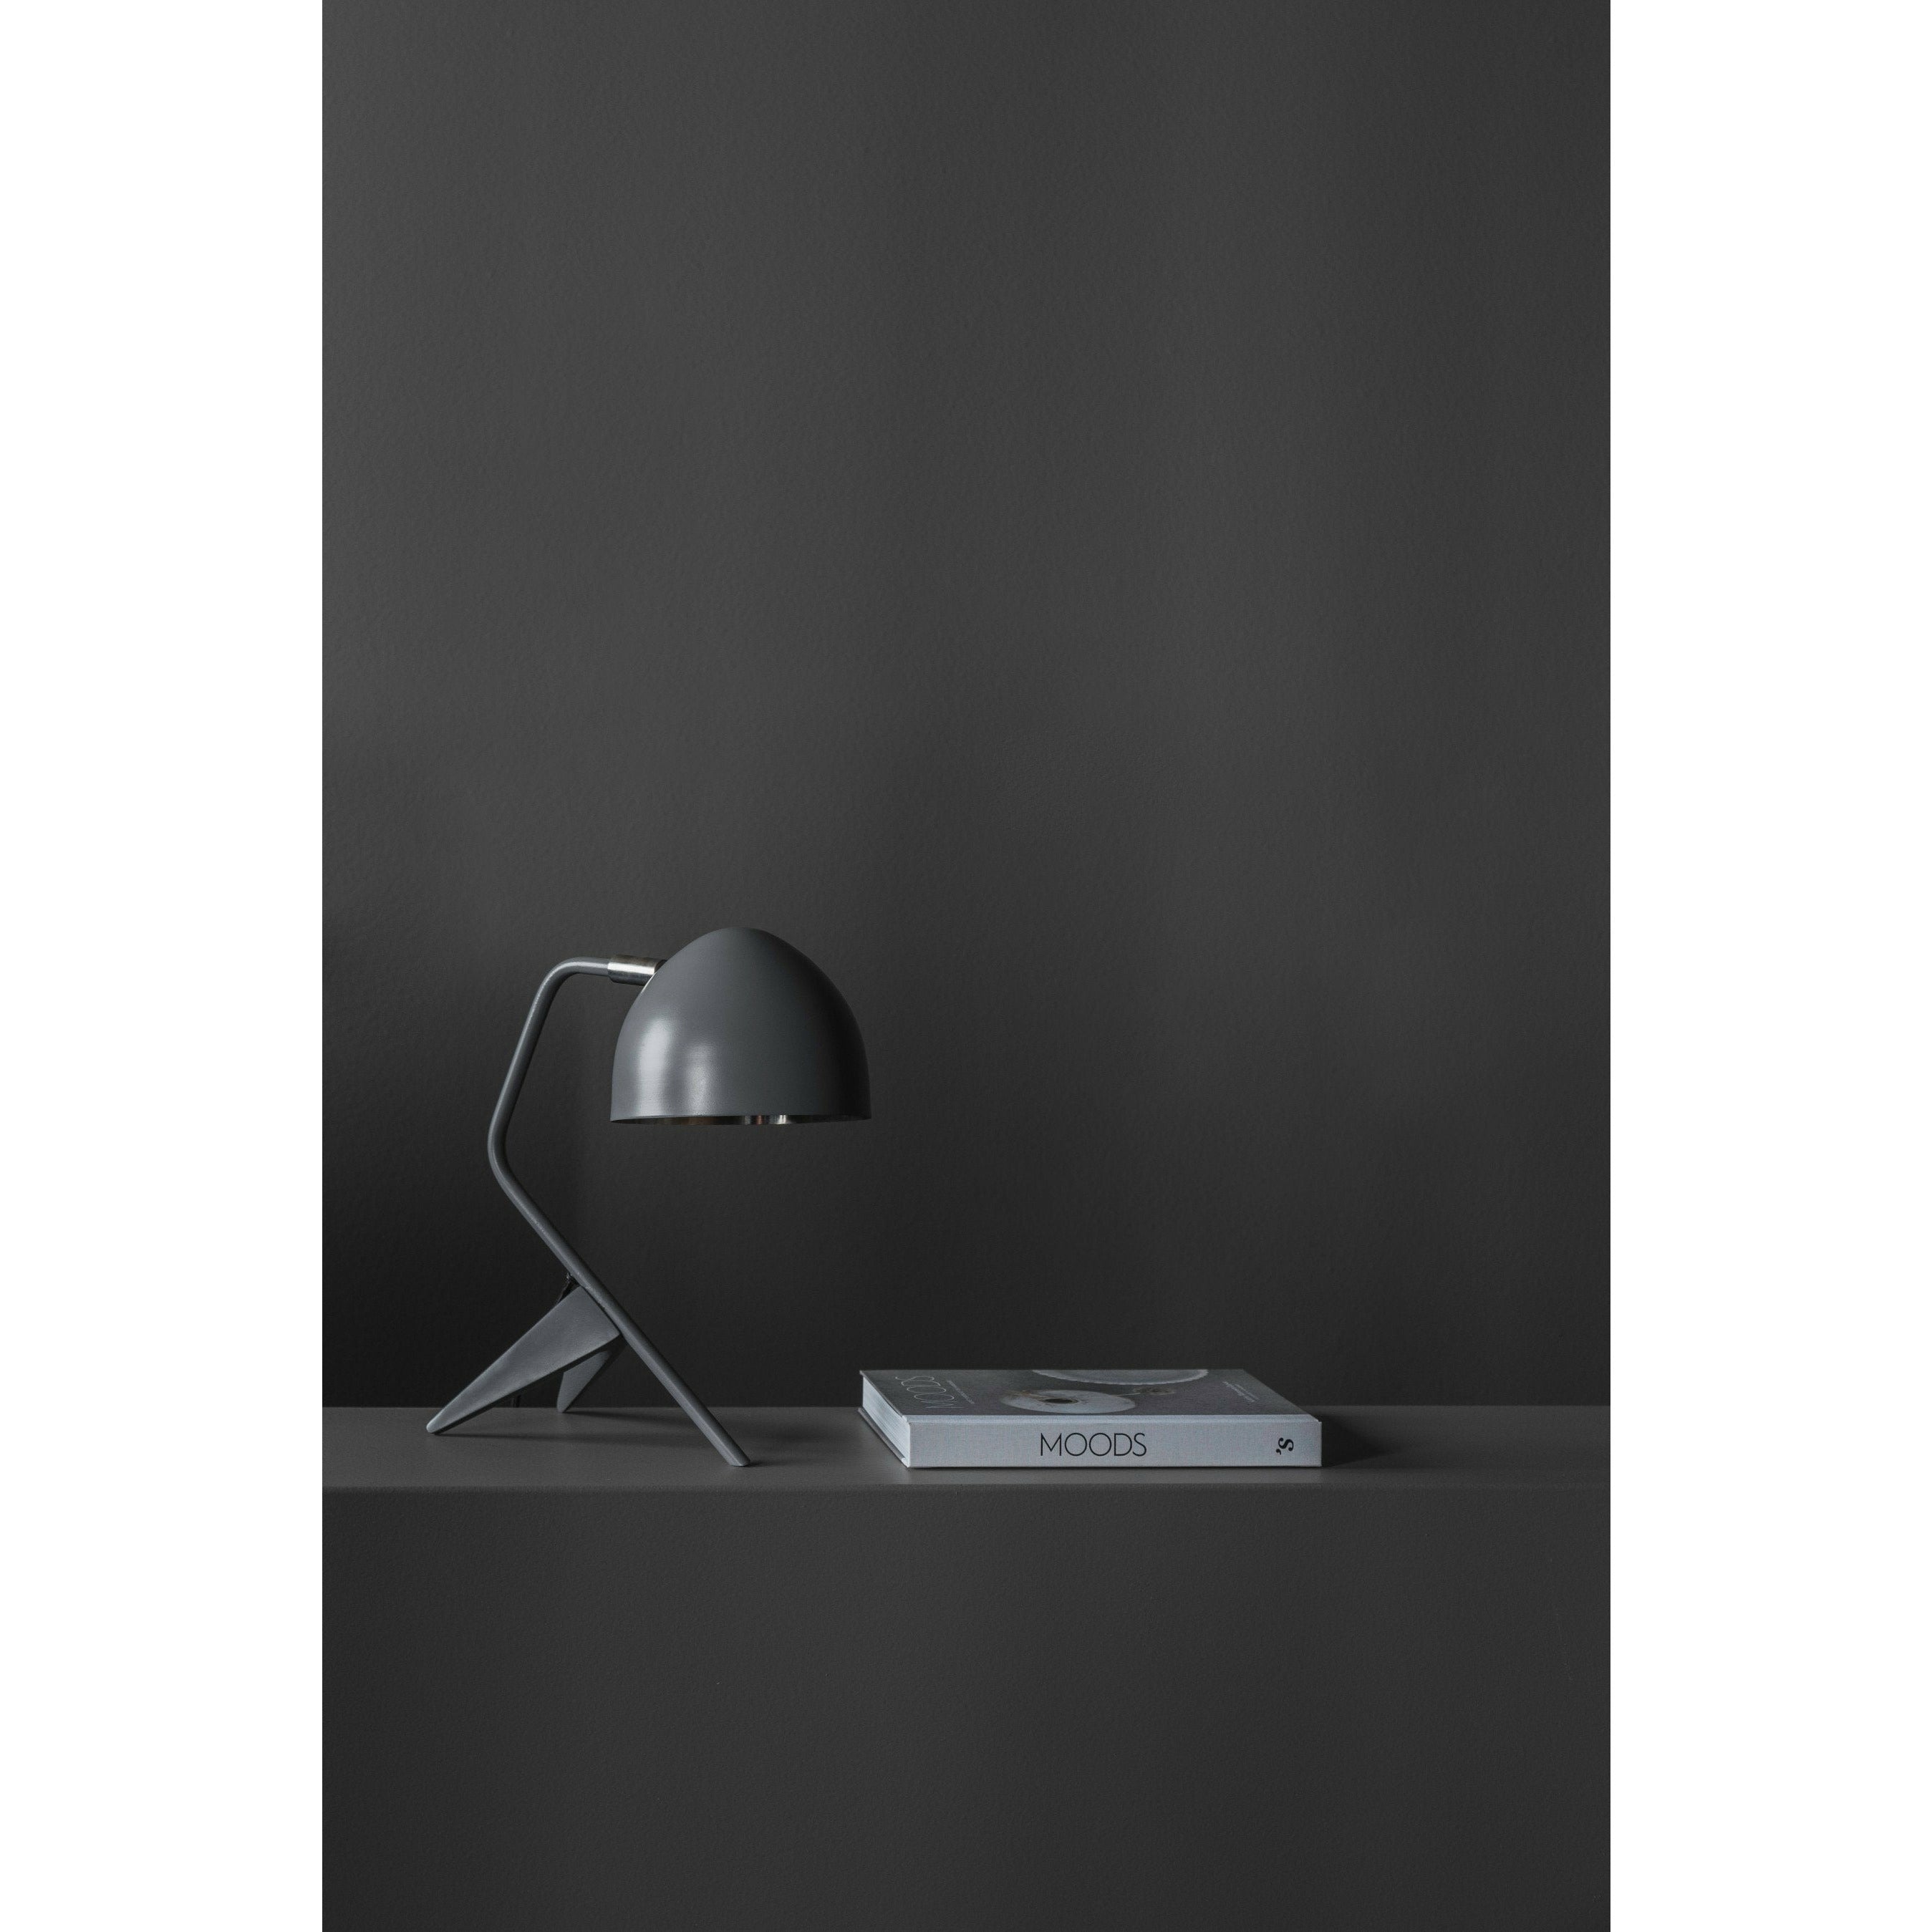 Klassik Studio Studio 1 Table Lamp, Black/Brass